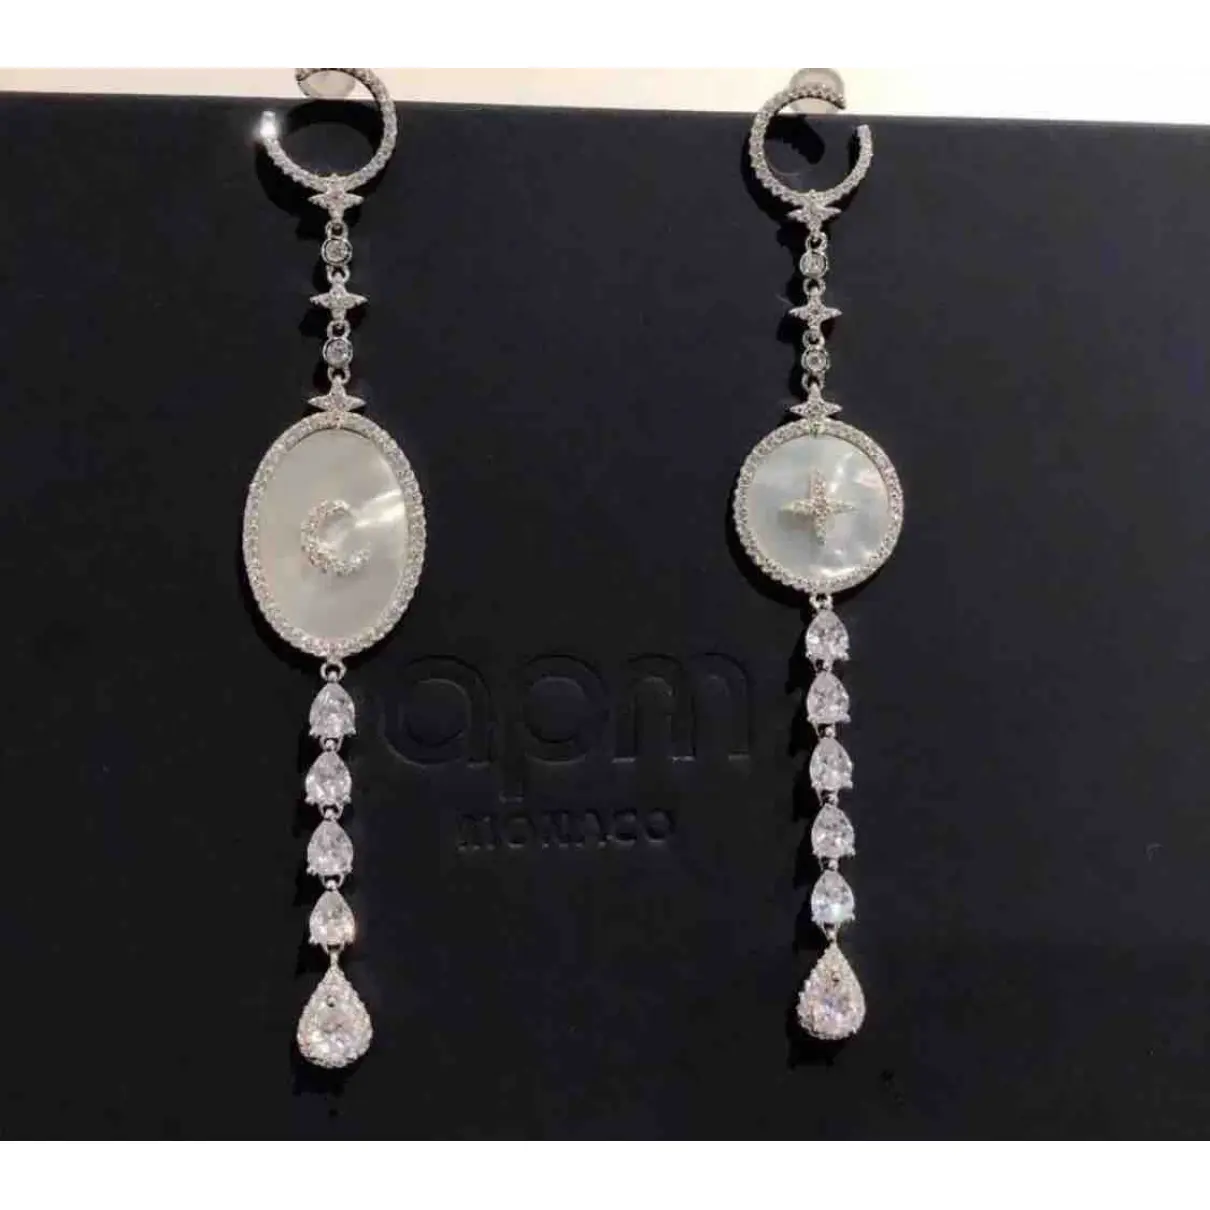 Buy APM Monaco Crystal earrings online